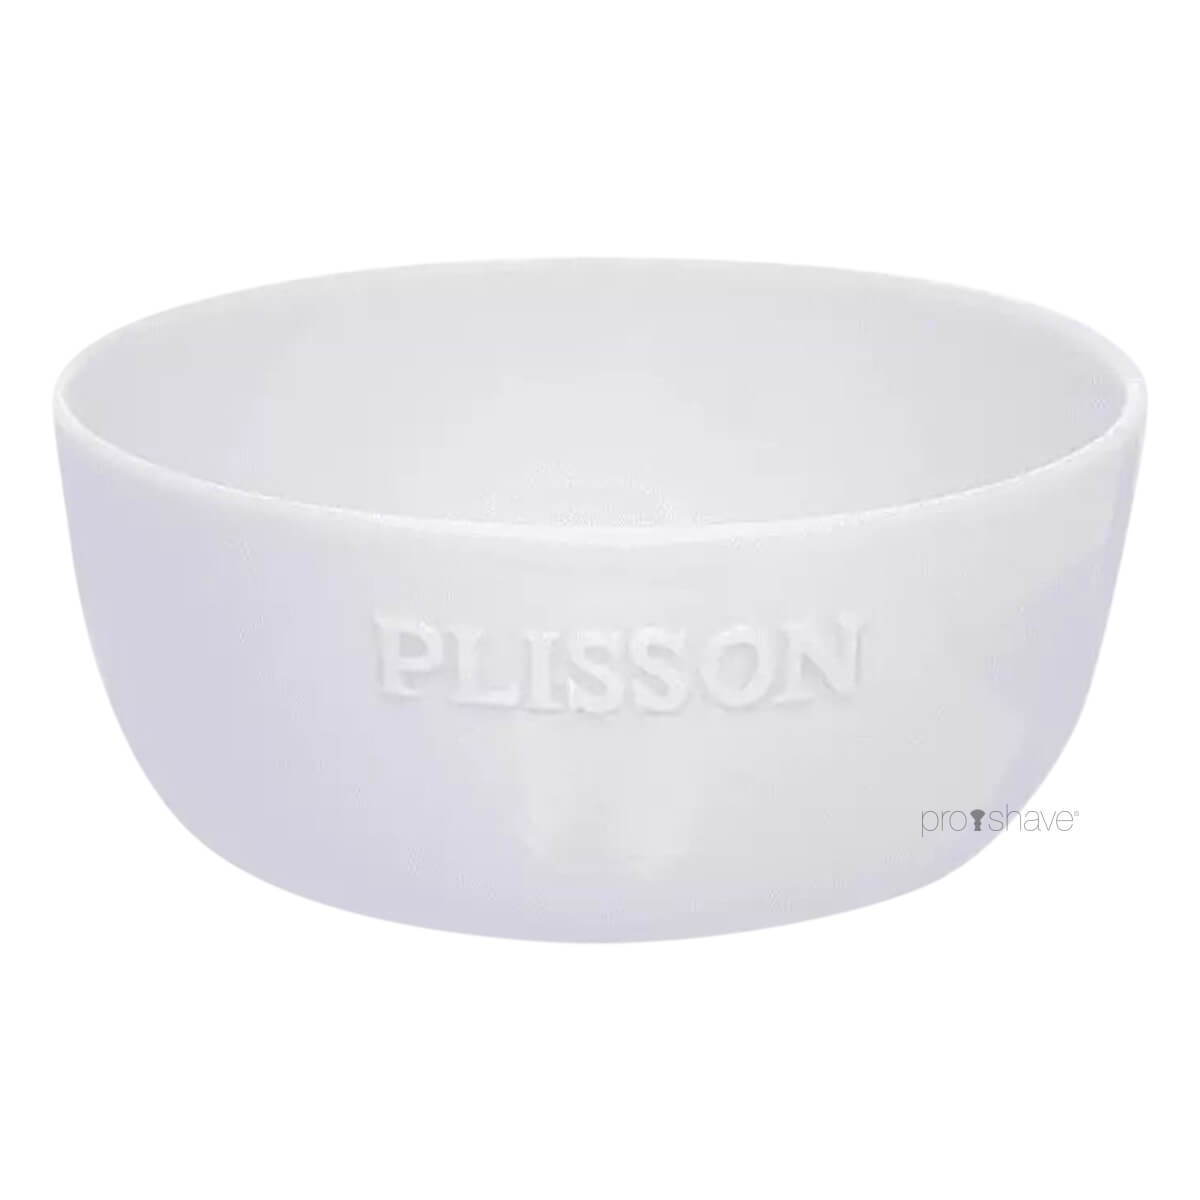 Se Plisson Limoges Porcelænsskål hos Proshave